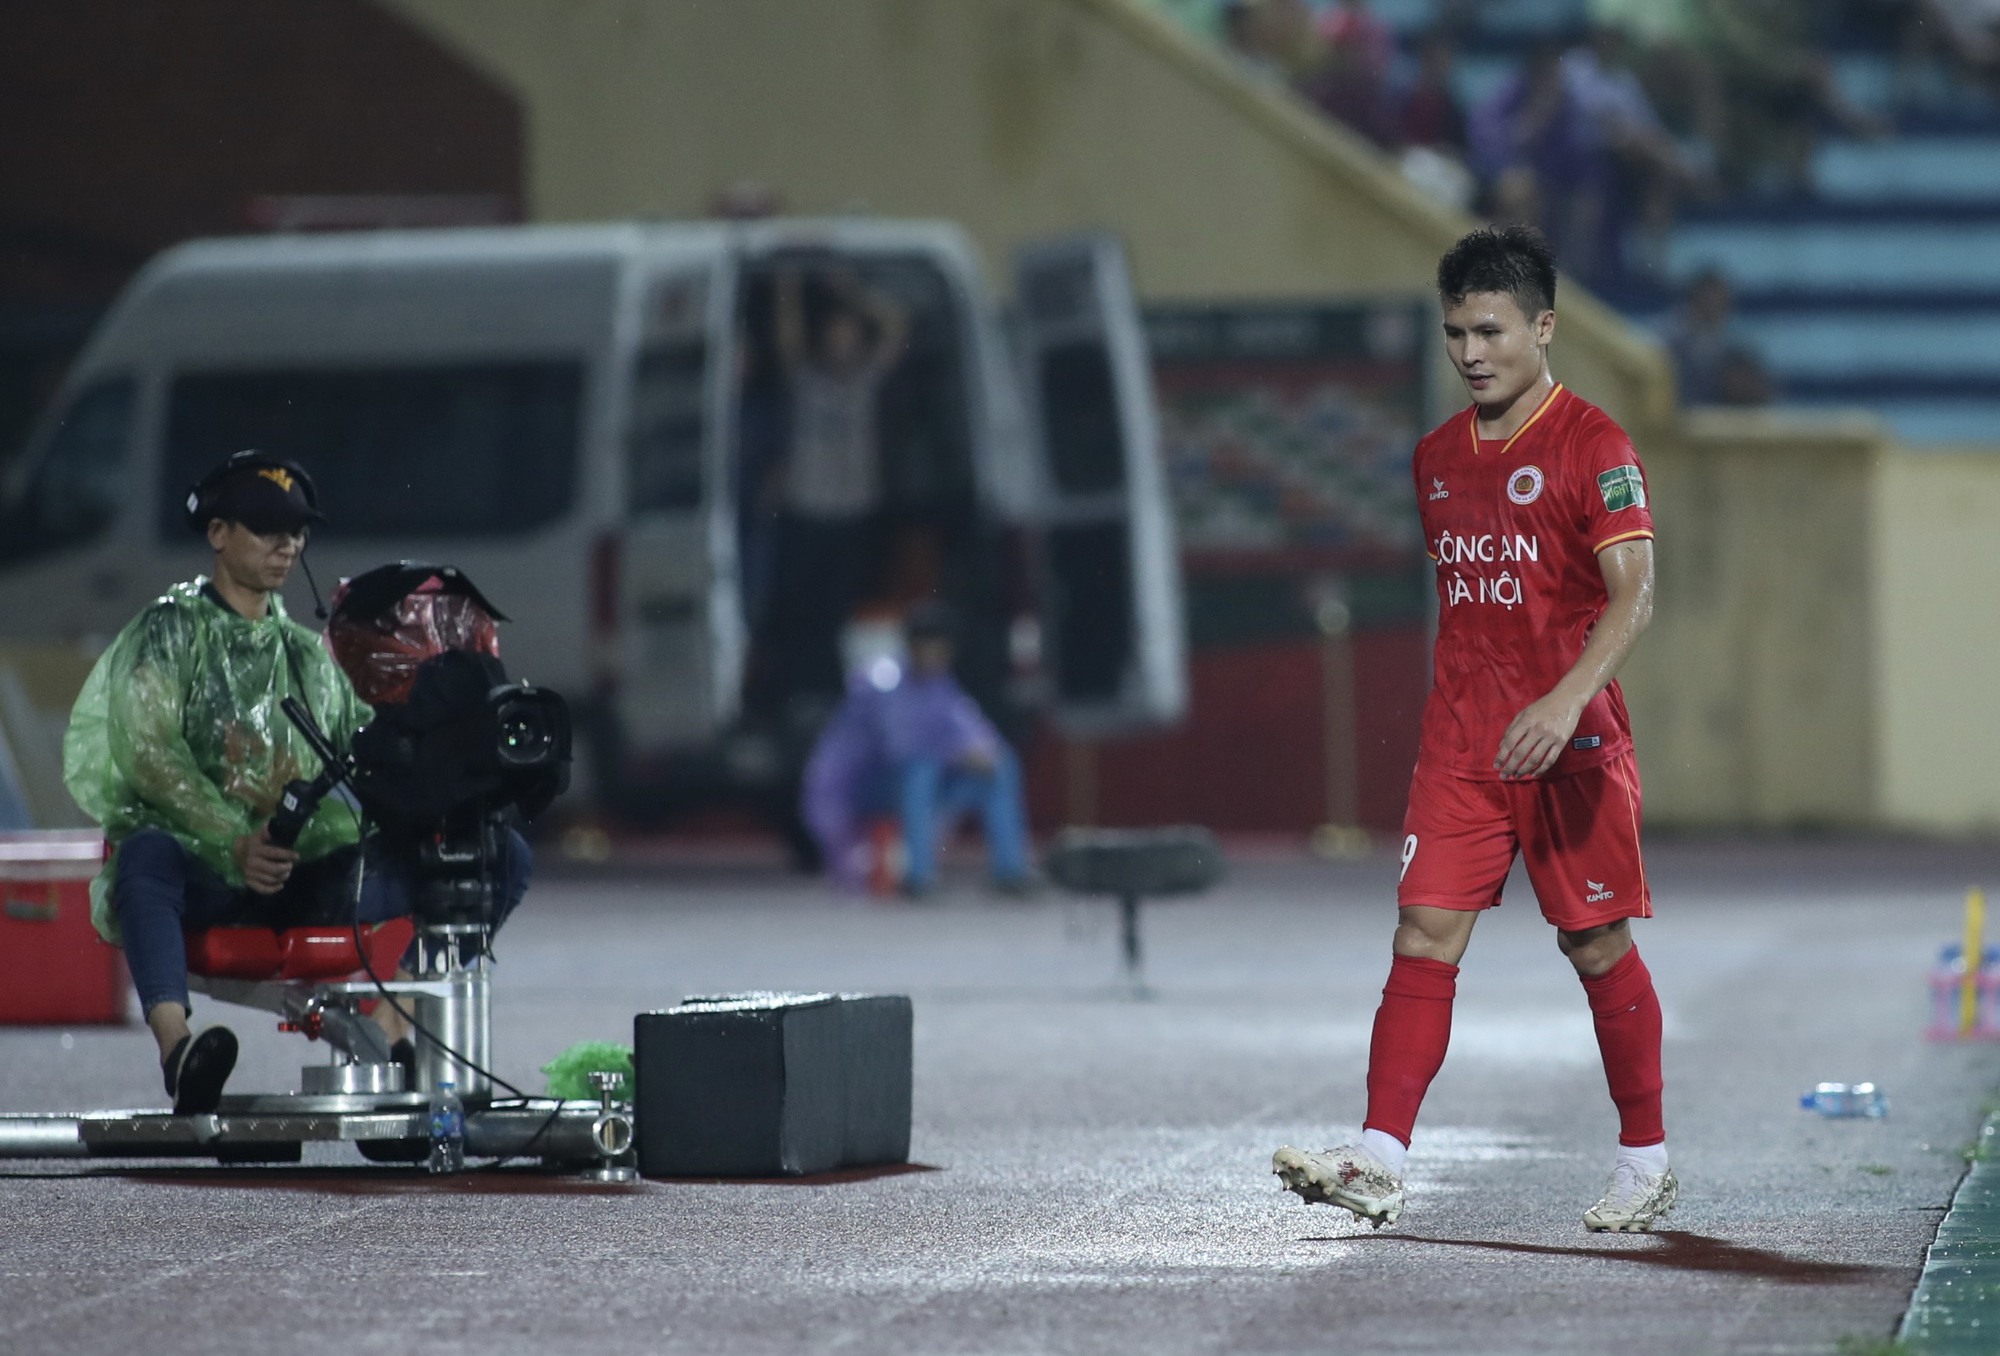 Quang Hải sẽ giúp Công An Hà Nội FC lấy lại niềm tin trước Hà Nội FC